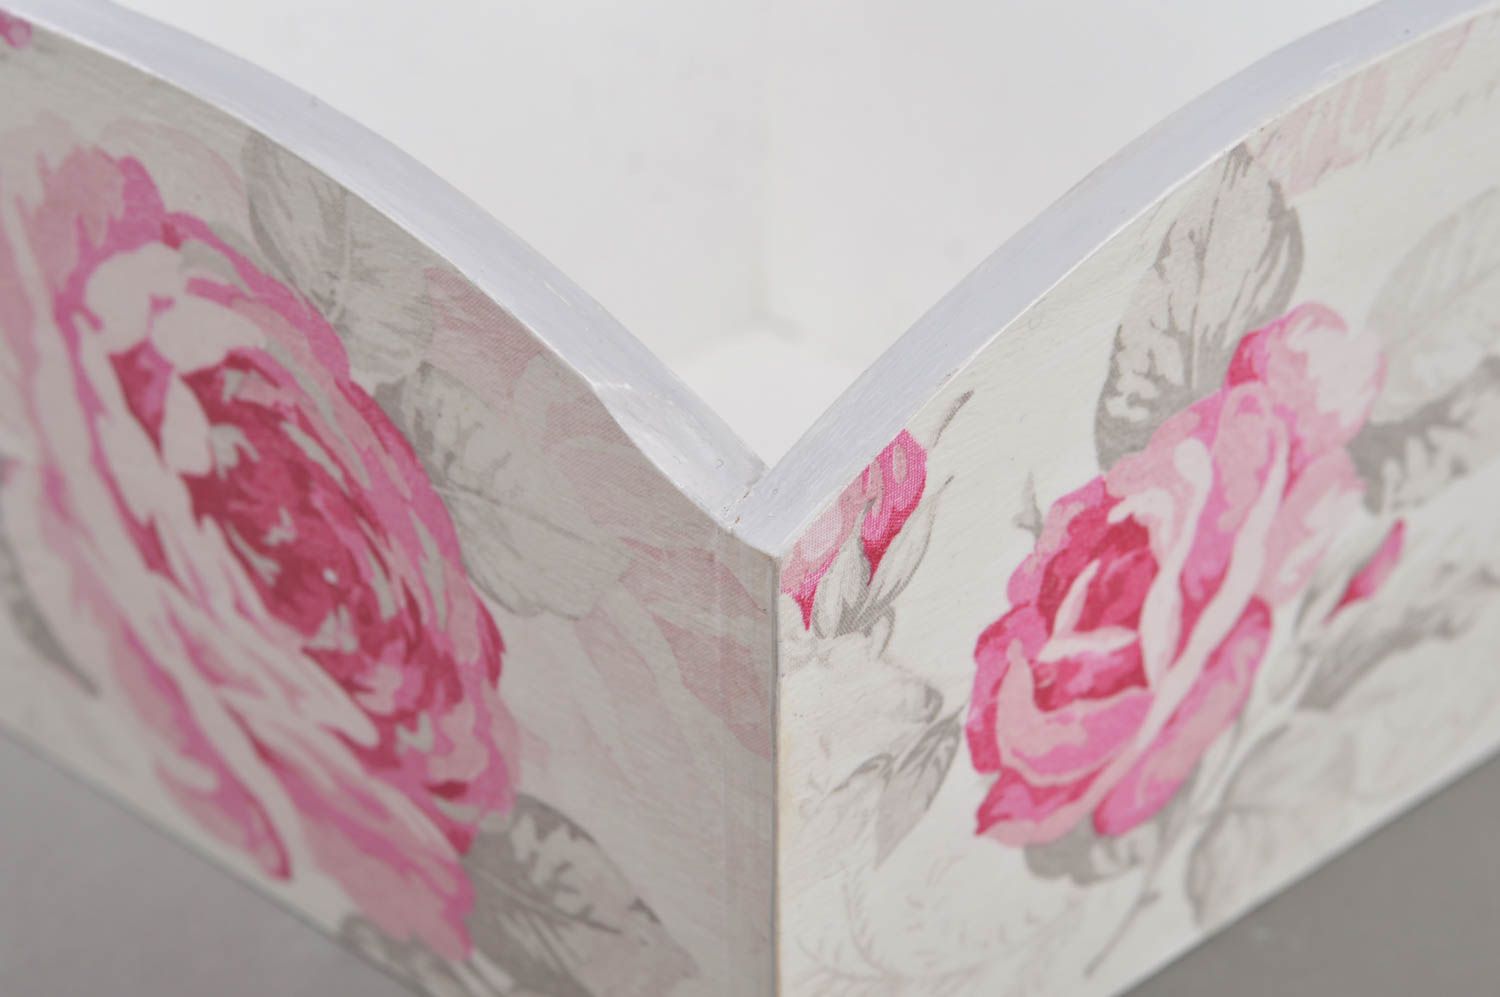 Авторская конфетница в технике декупаж из фанеры с рисунком роз ручной работы фото 3